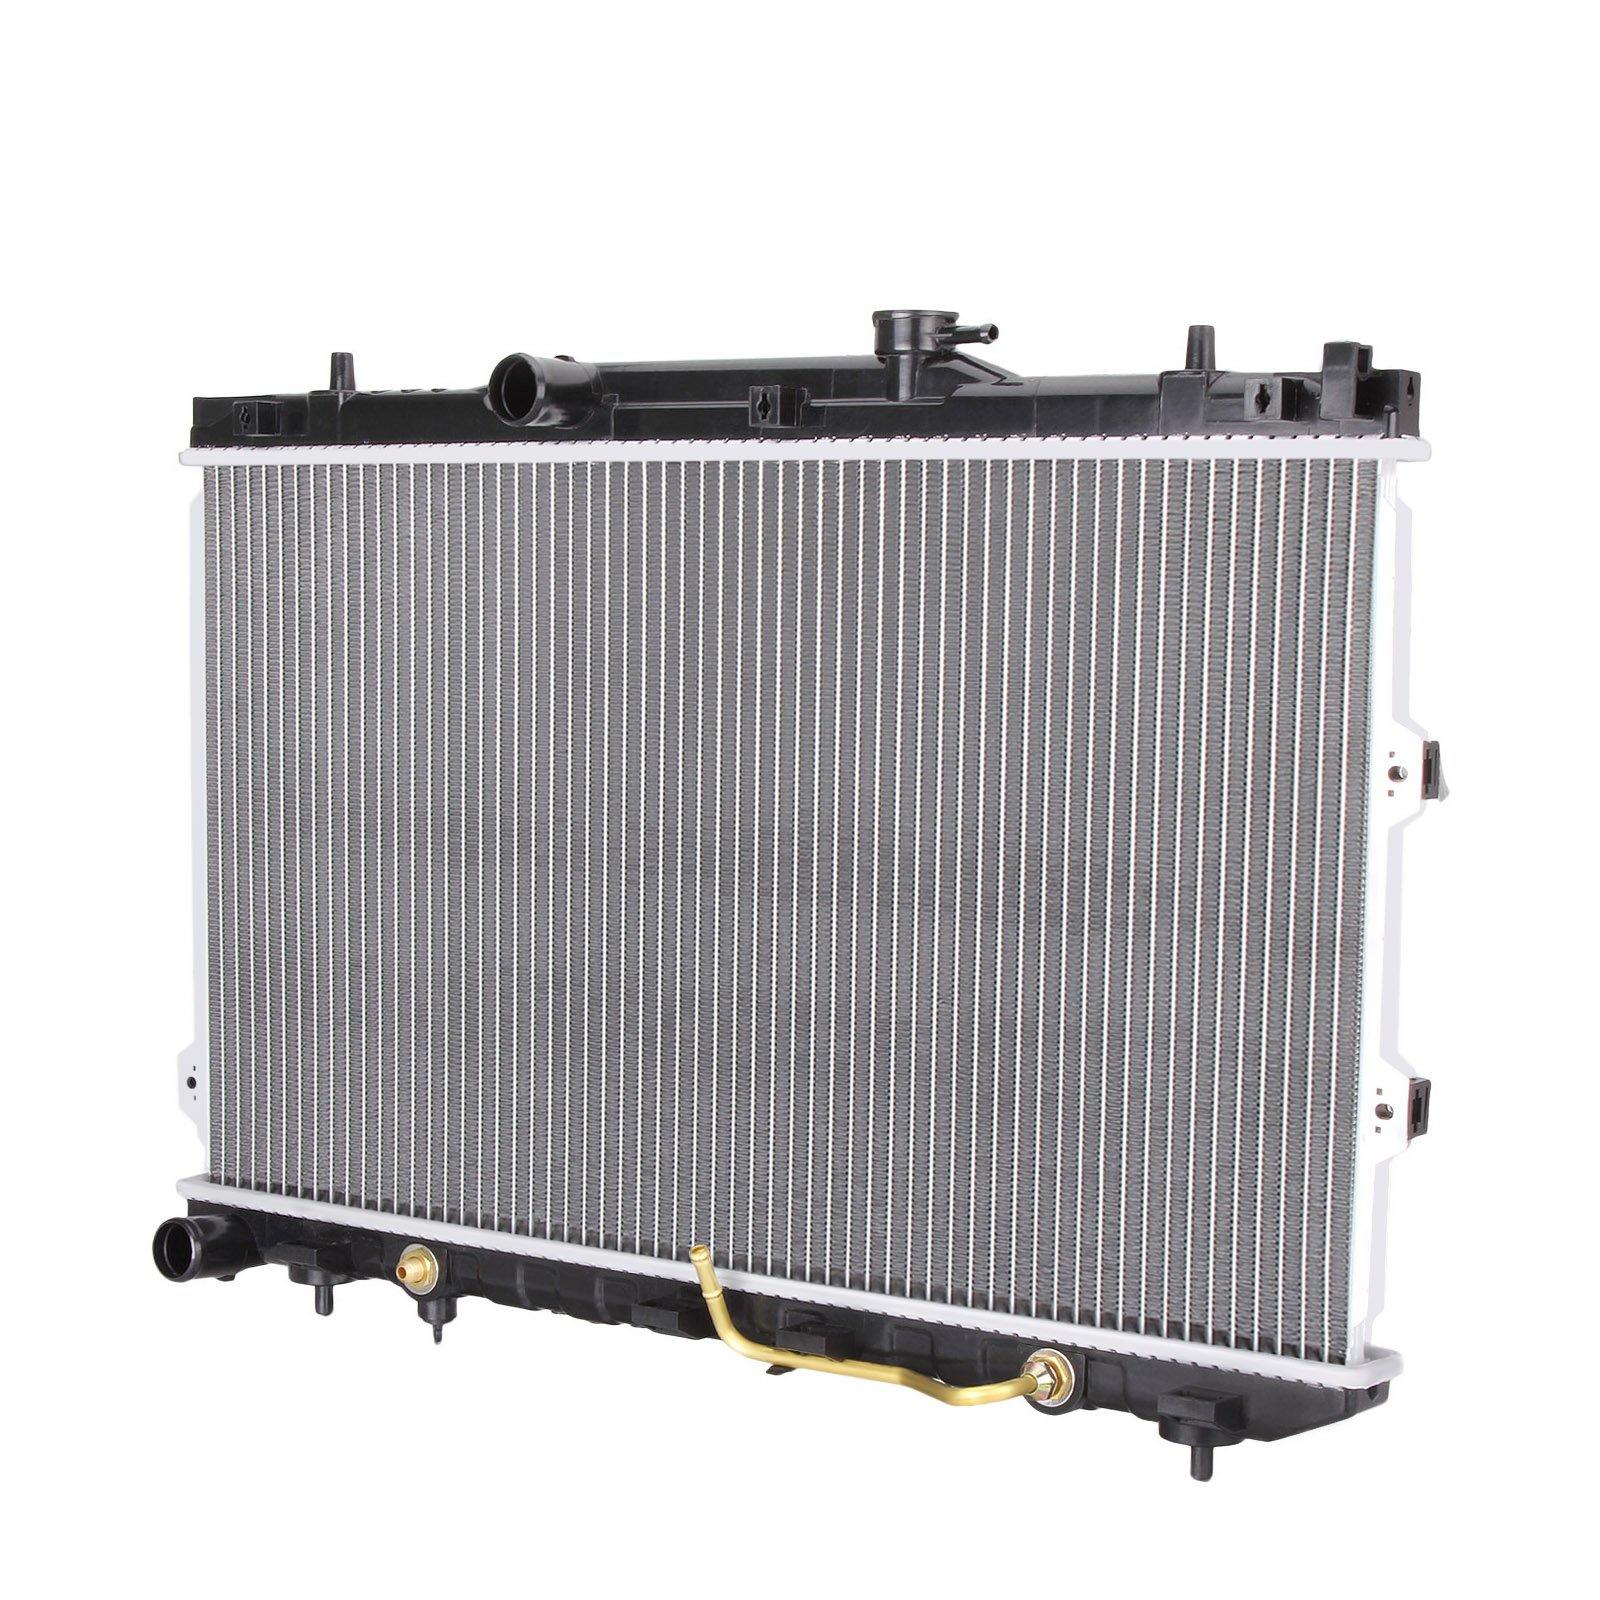 KIA Cerato LD car radiator (3).jpg